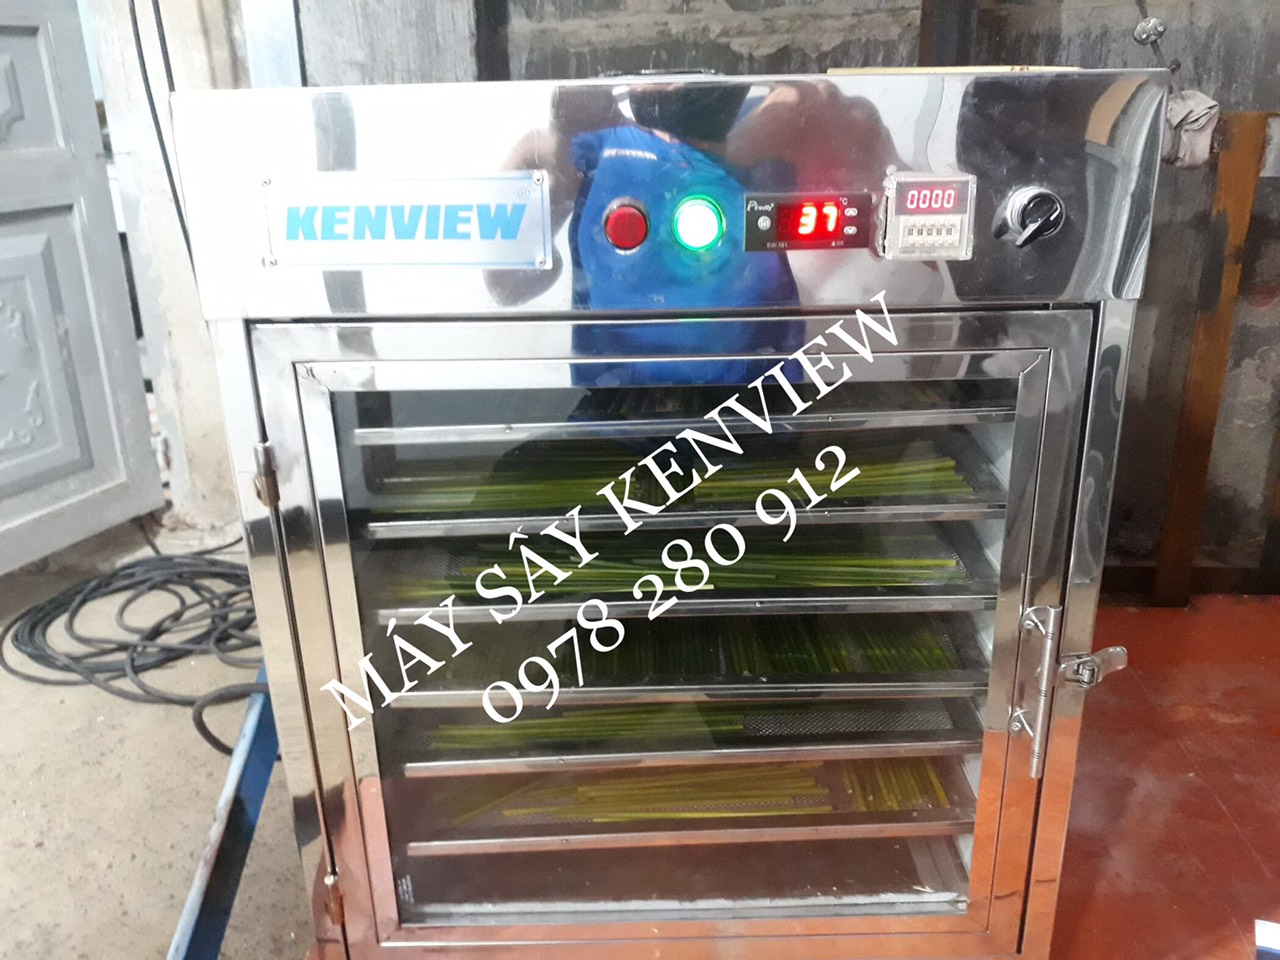 Kenview cung cấp máy sấy ống hút cỏ tại An Giang.0978 280 912